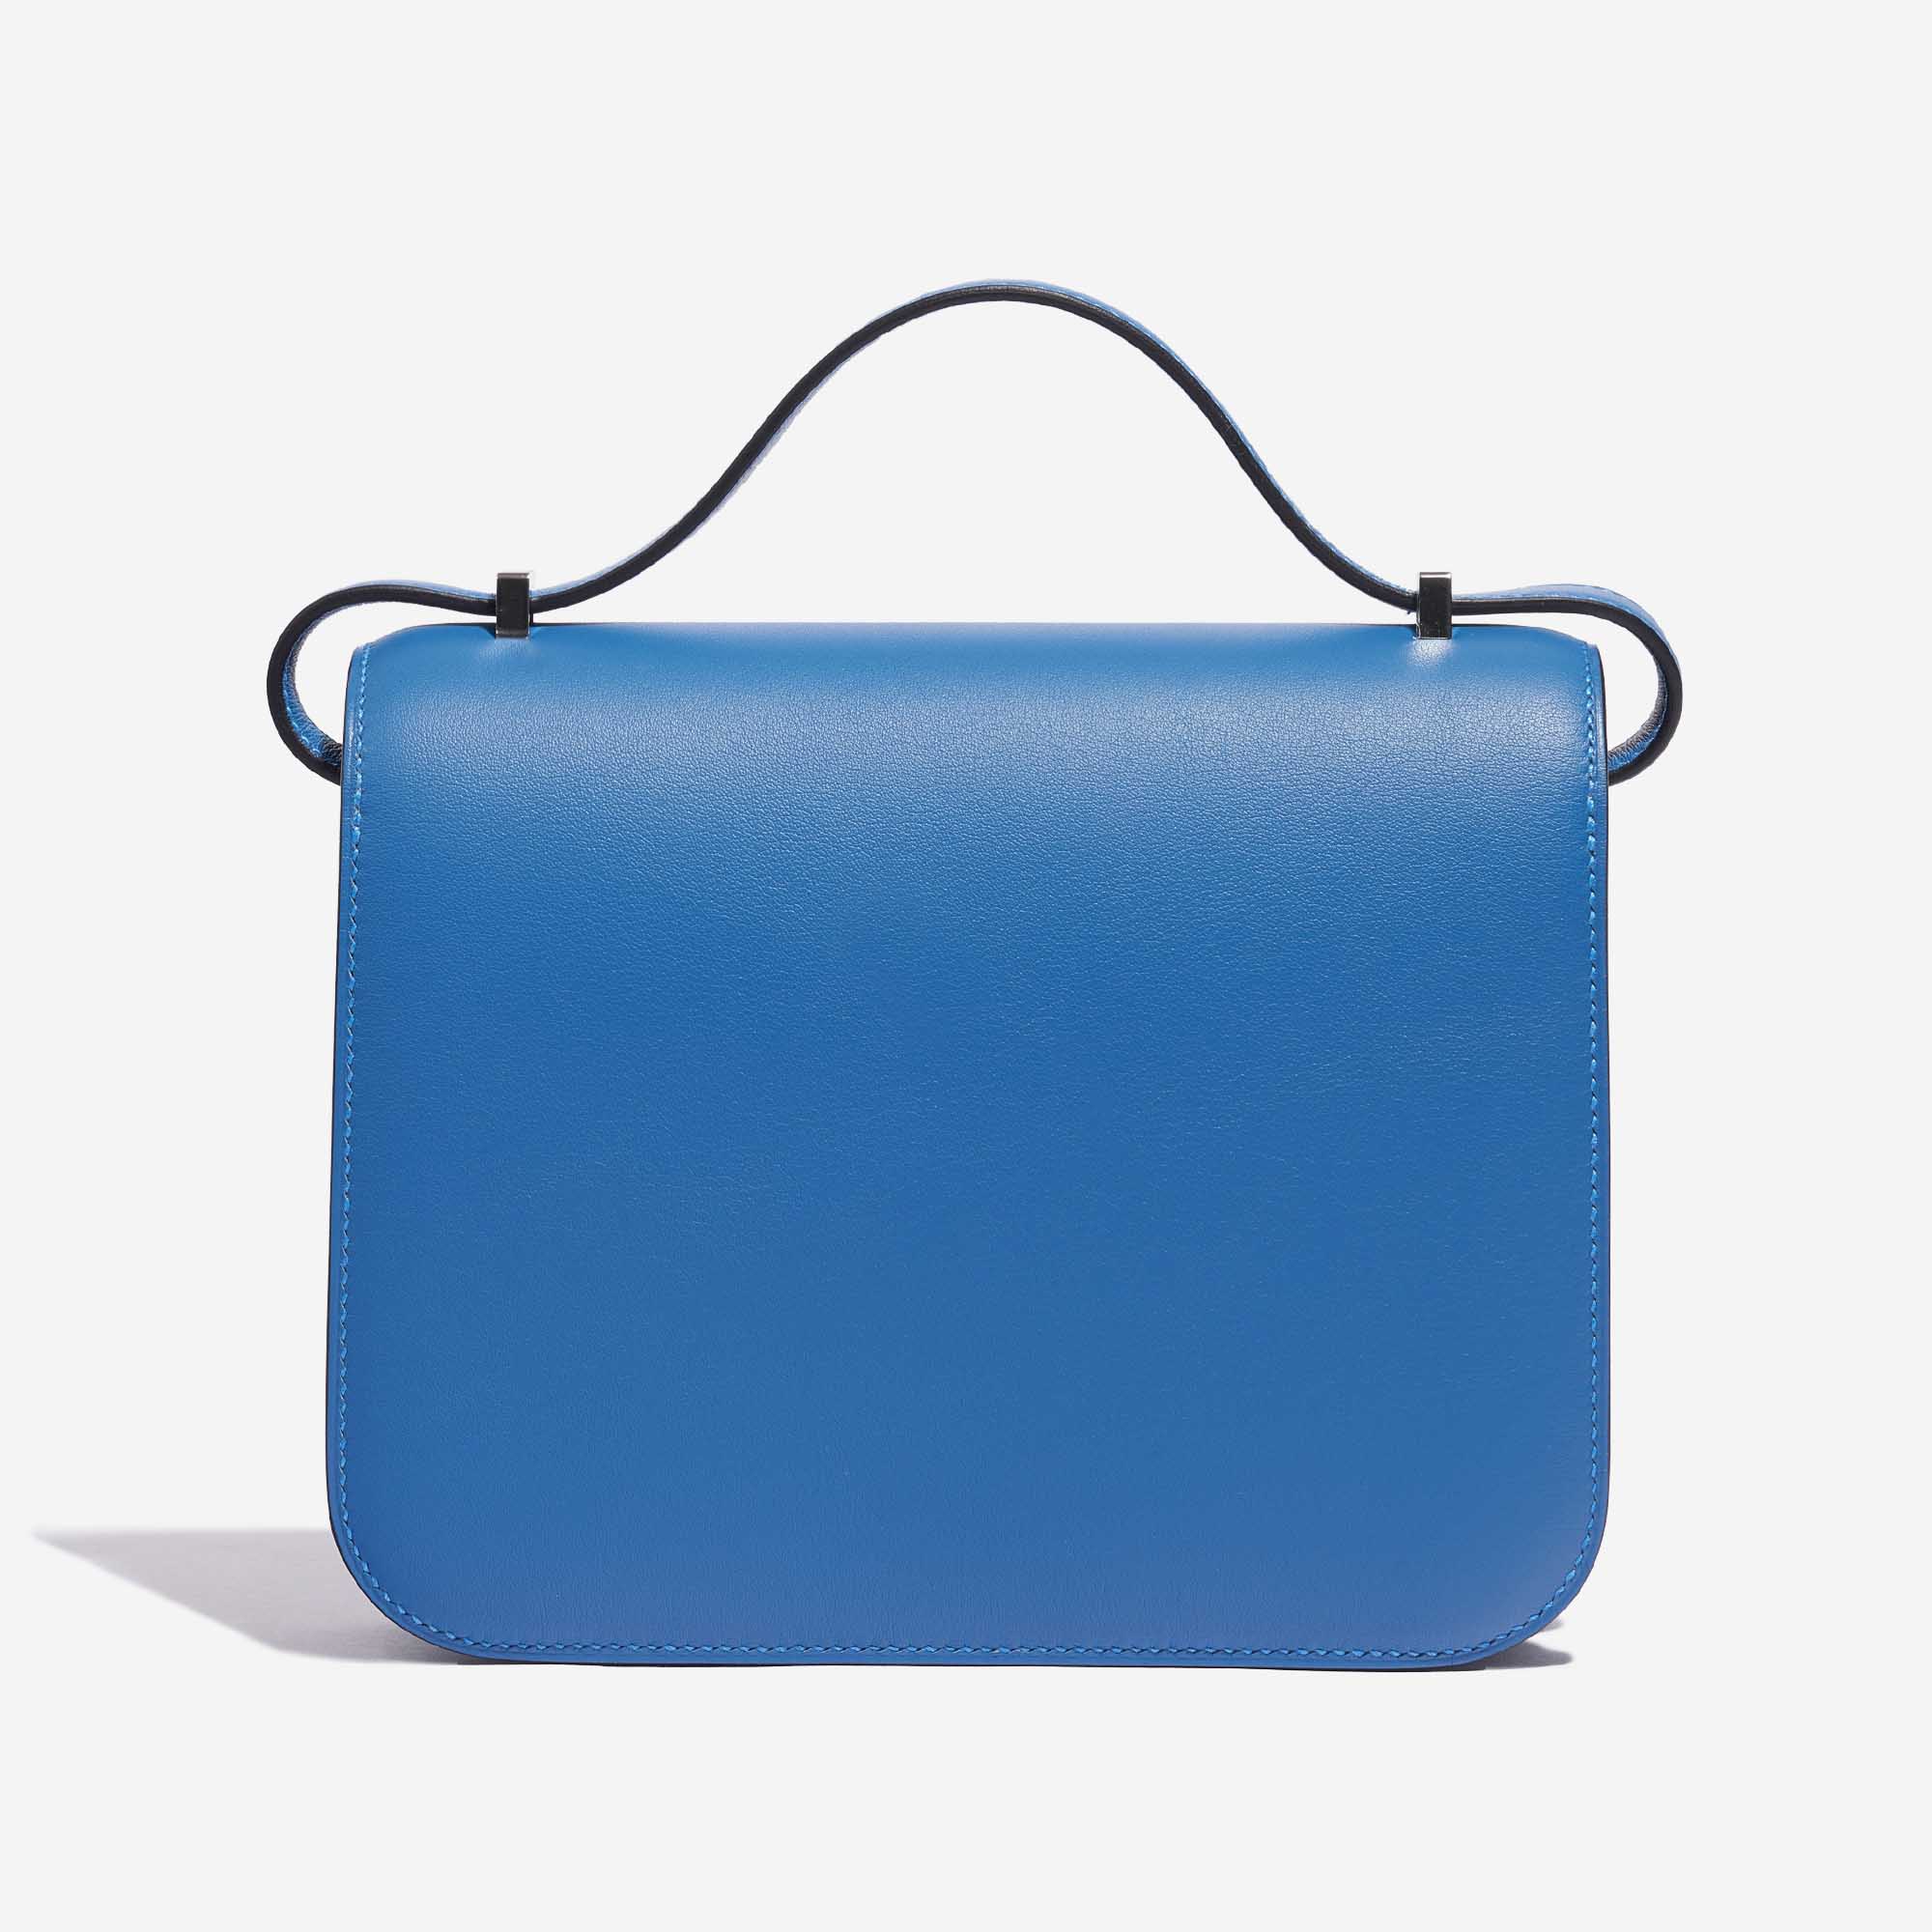 Pre-owned Hermès bag Constance 18 Swift Blue Mykonos / Blue Encre Blue Back | Sell your designer bag on Saclab.com